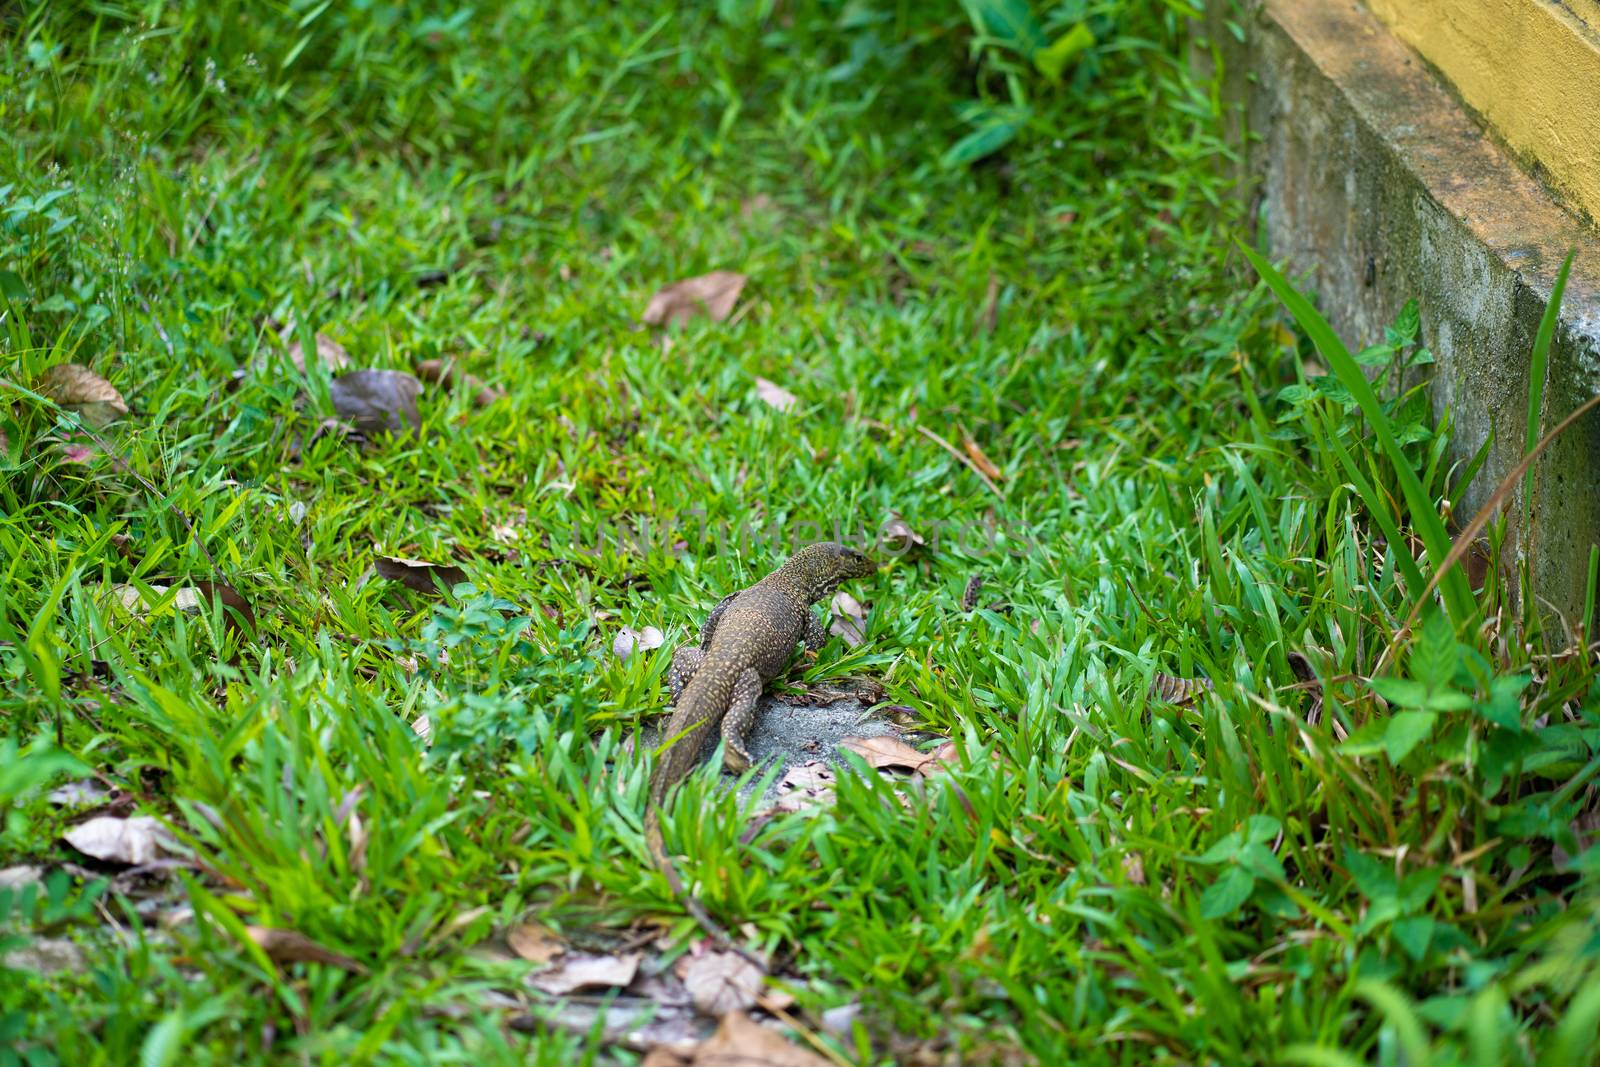 Komodo lizard walks on the lawn in the park.